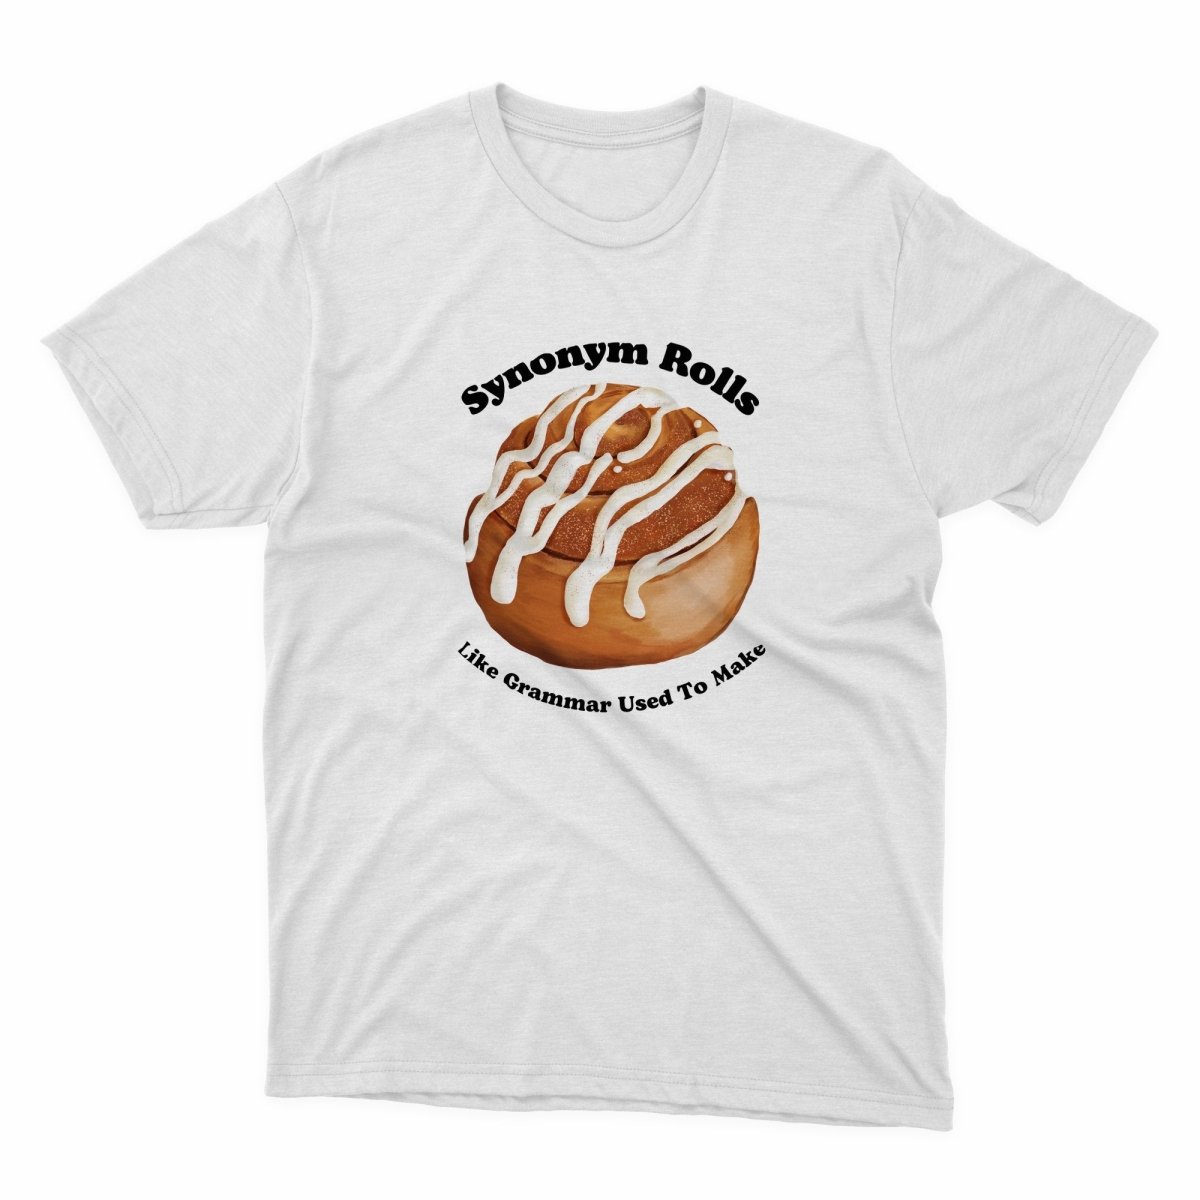 Synonym Rolls Shirt - stickerbullSynonym Rolls ShirtShirtsPrintifystickerbull12632924048389893688WhiteSa white t - shirt with a donut with icing on it